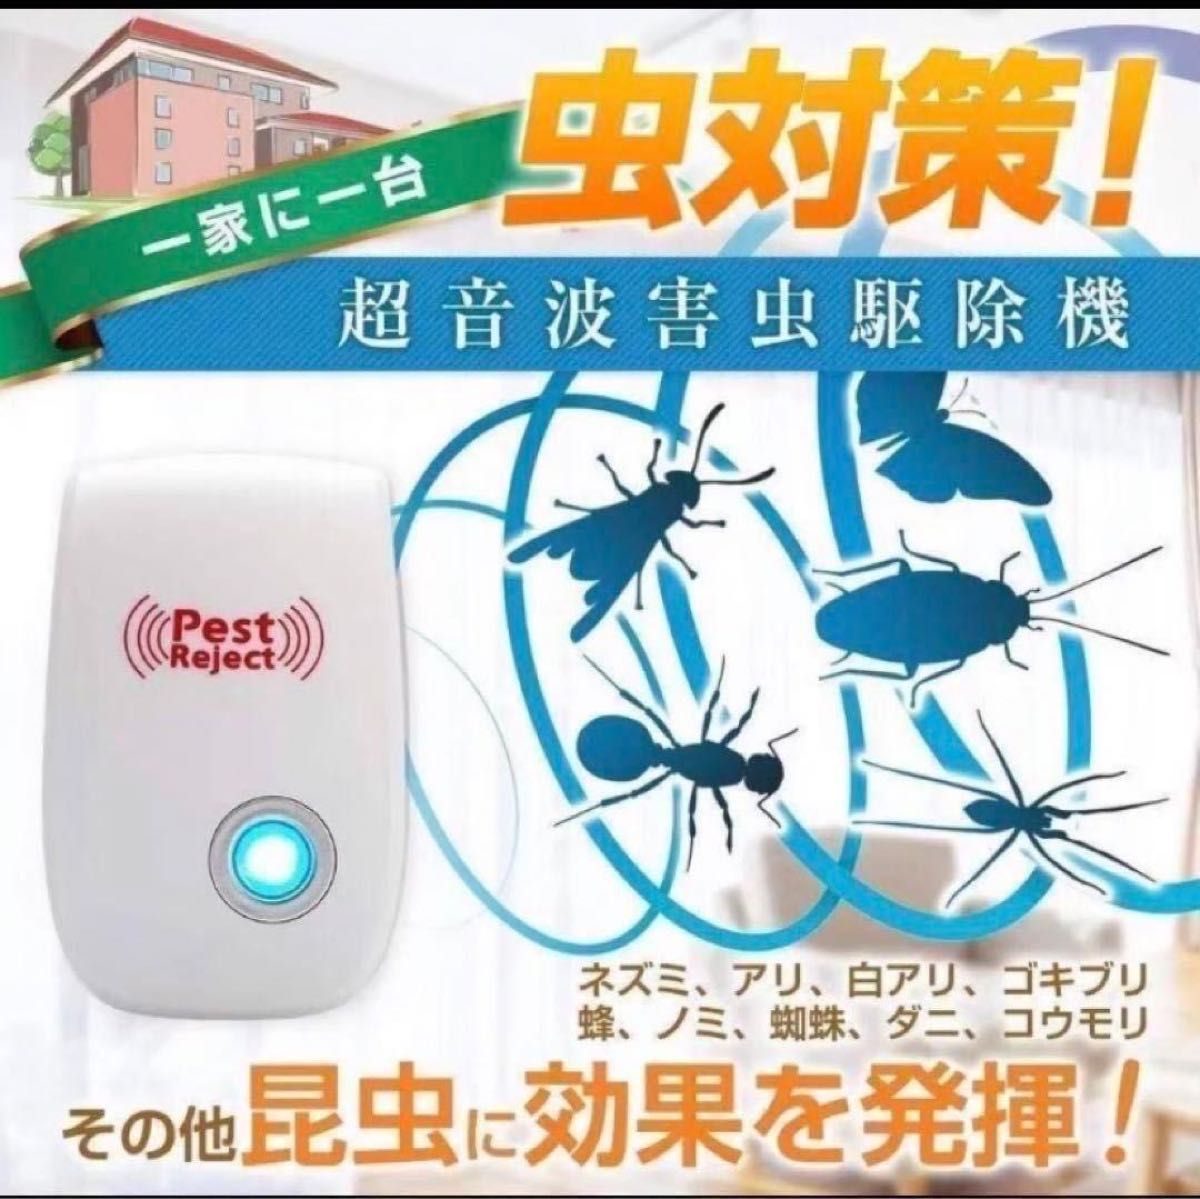 8個 最新版 超音波害虫駆除 虫よけ 虫除け器 ネズミ駆除 撃退ねずみ ゴキブリ  蚊 ダニ 退治 対策